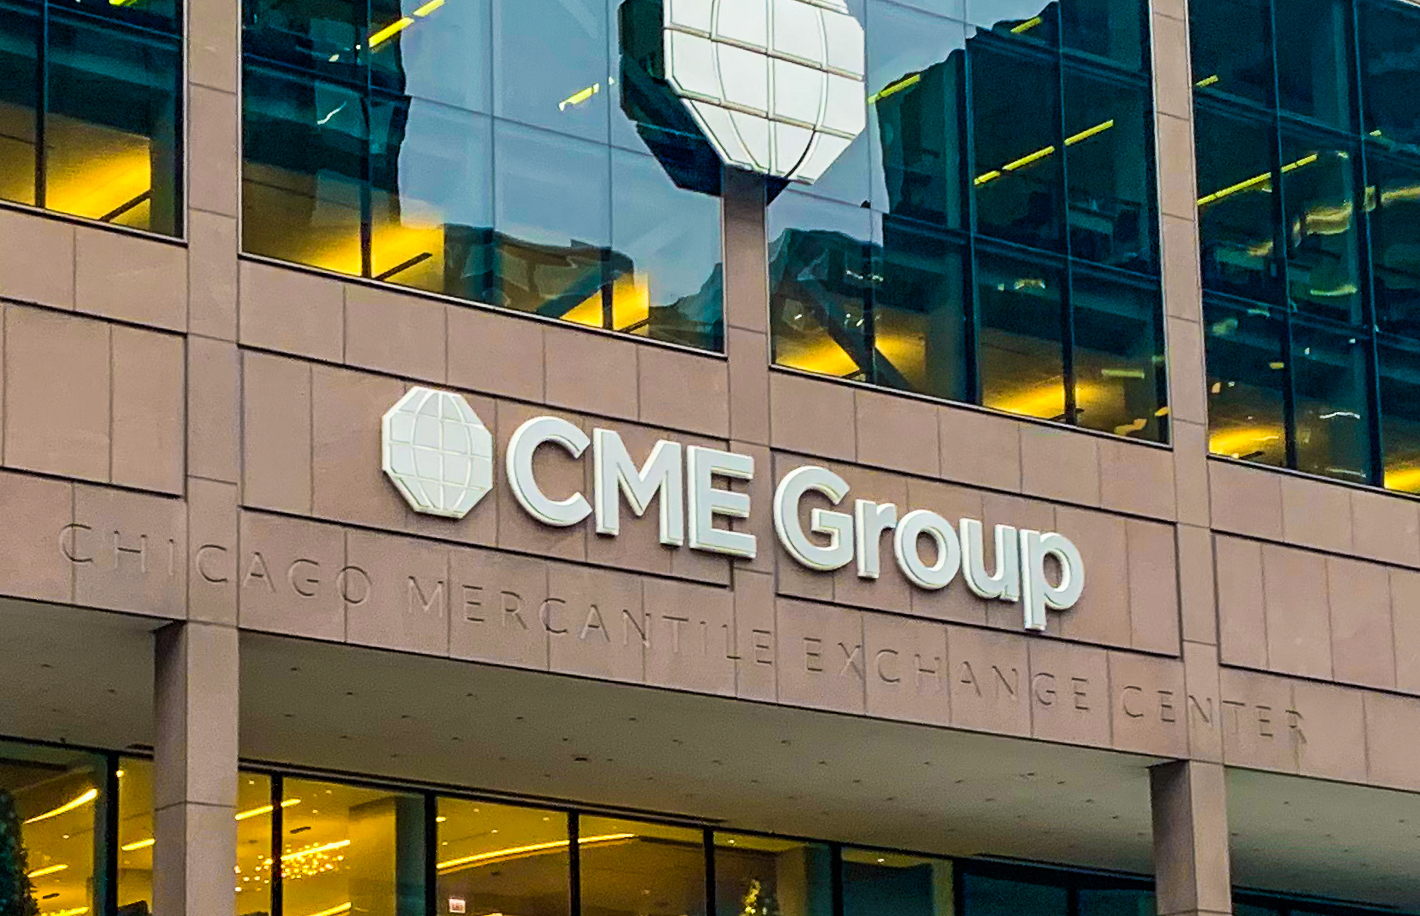 سي ام اي جروب CME Group توسع خيارات الخزانة الأمريكية مع انتهاء صلاحيتها يوم الاثنين